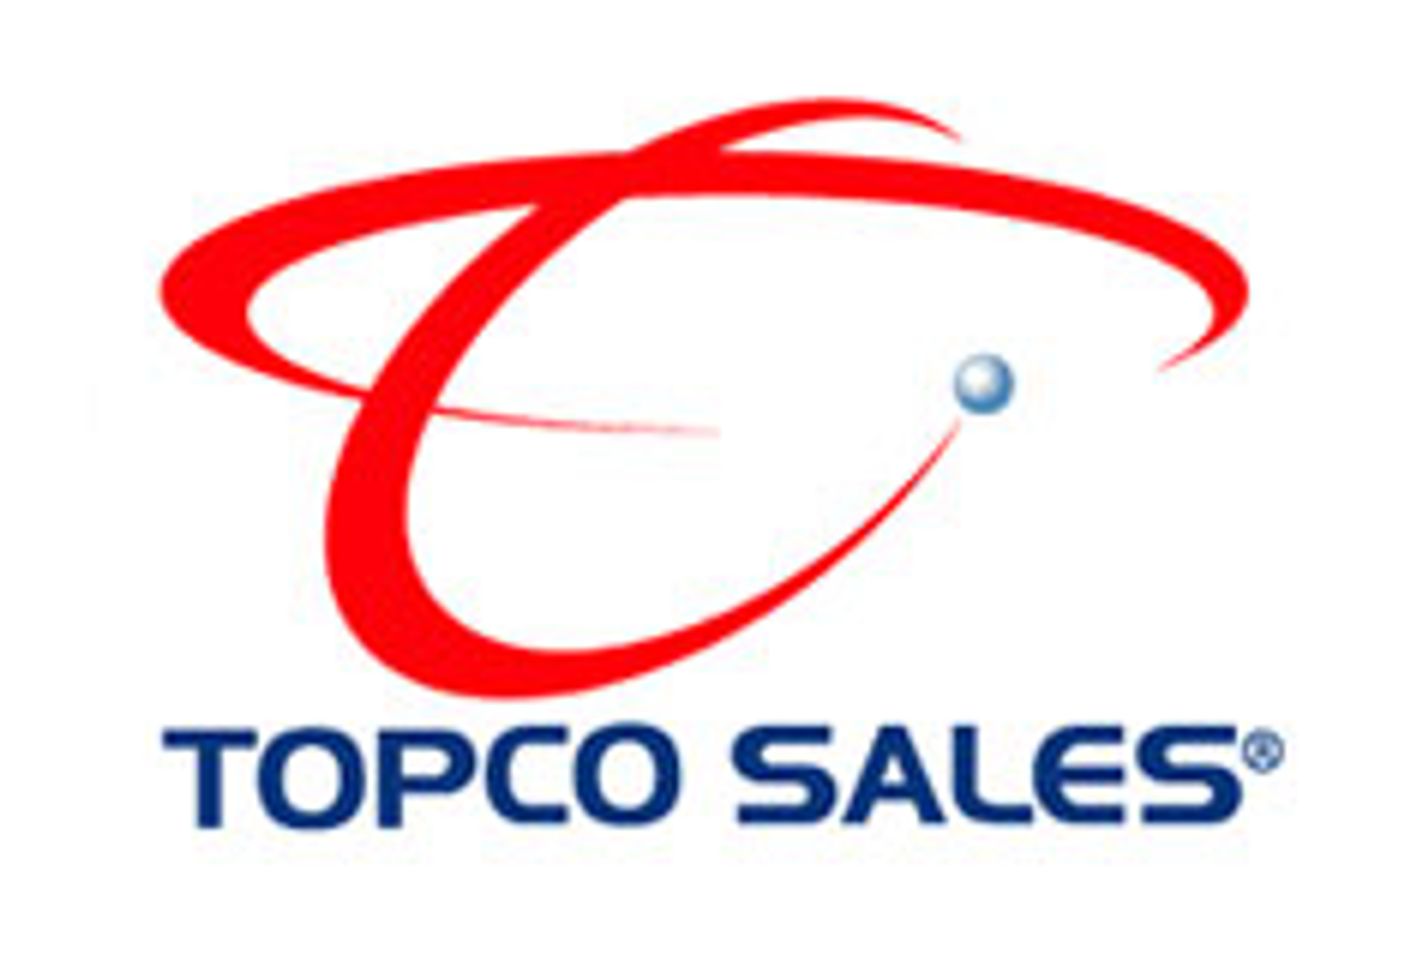 Company Profile: Topco Sales